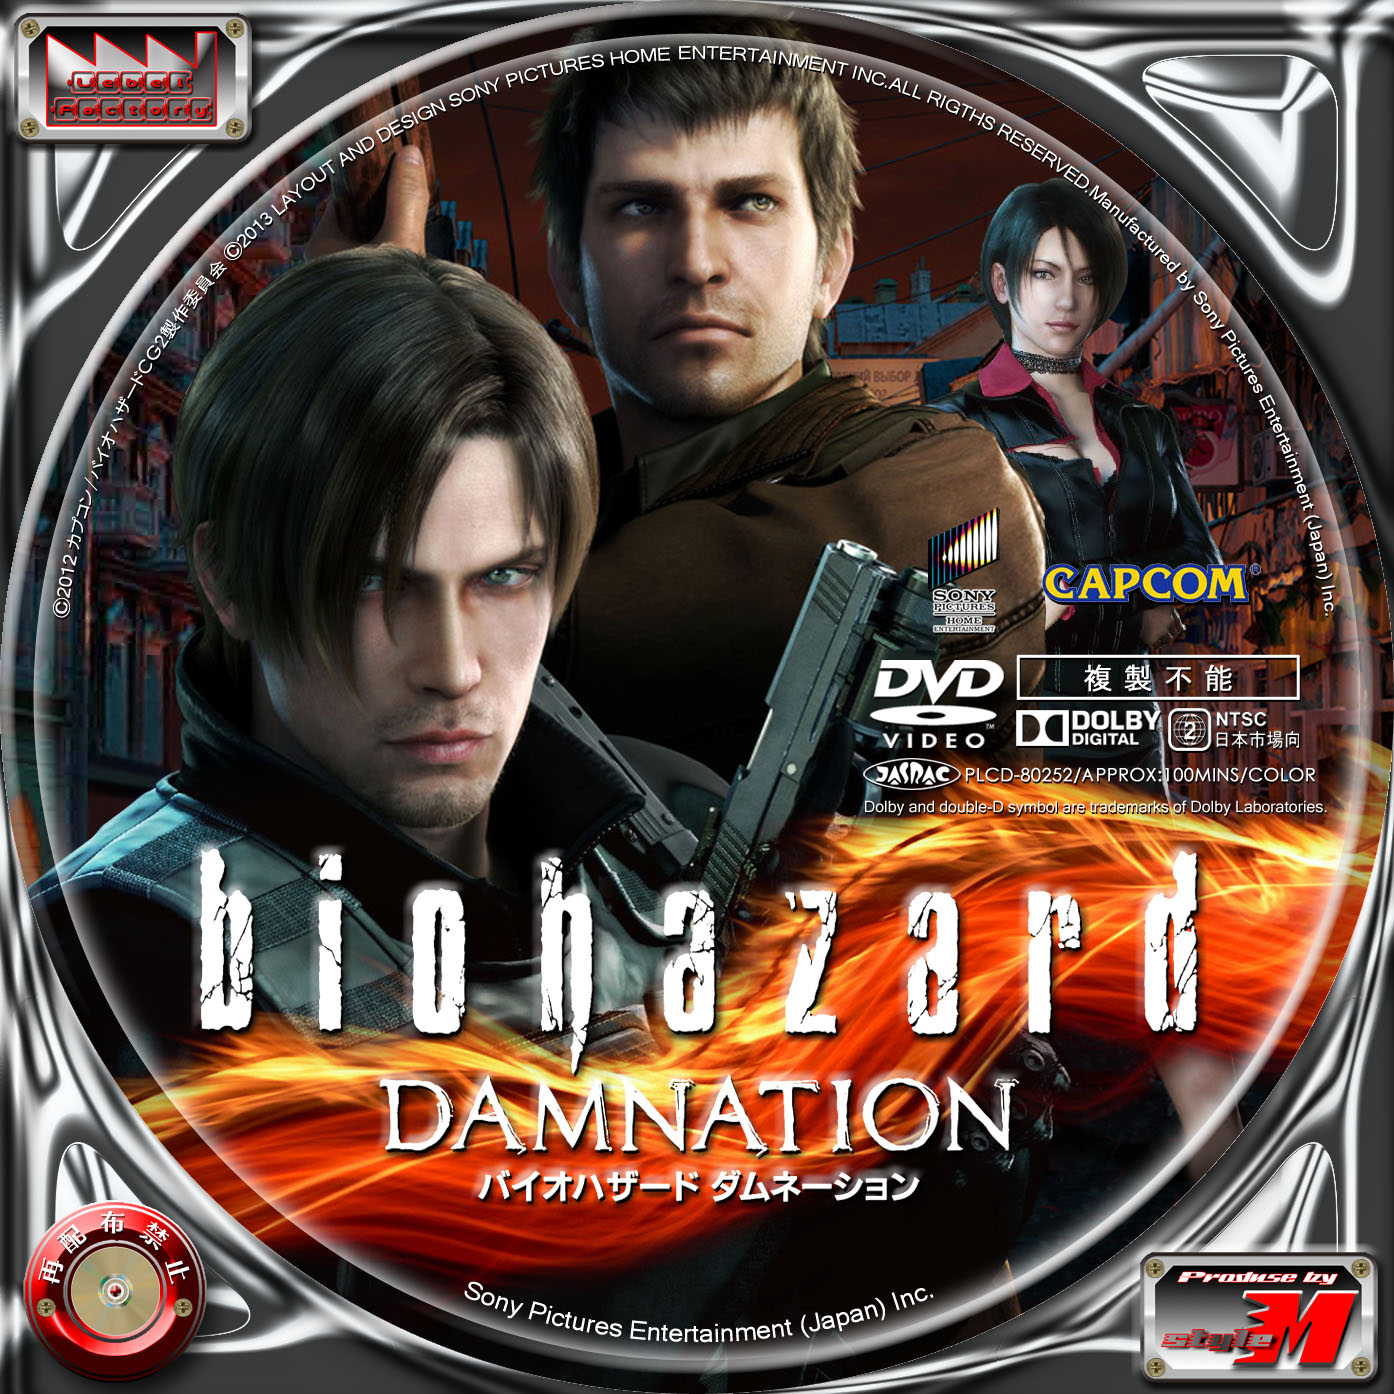 Biohazard Damnation バイオハザード ダムネーション Label Factory M Style 自作dvd レーベル ラベル